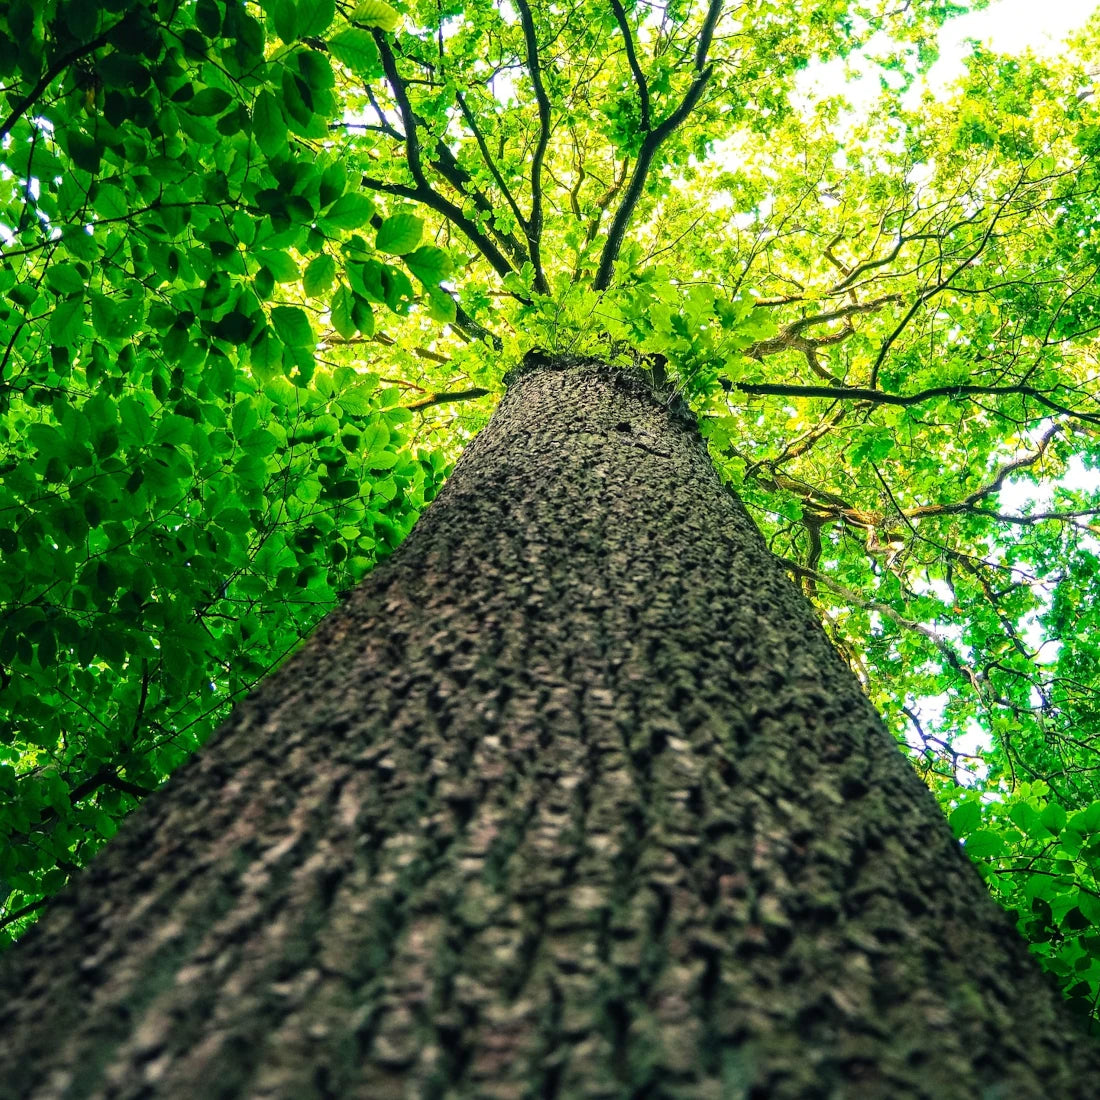 Baum mit grünen Blättern von unten am Stamm nach oben fotografiert